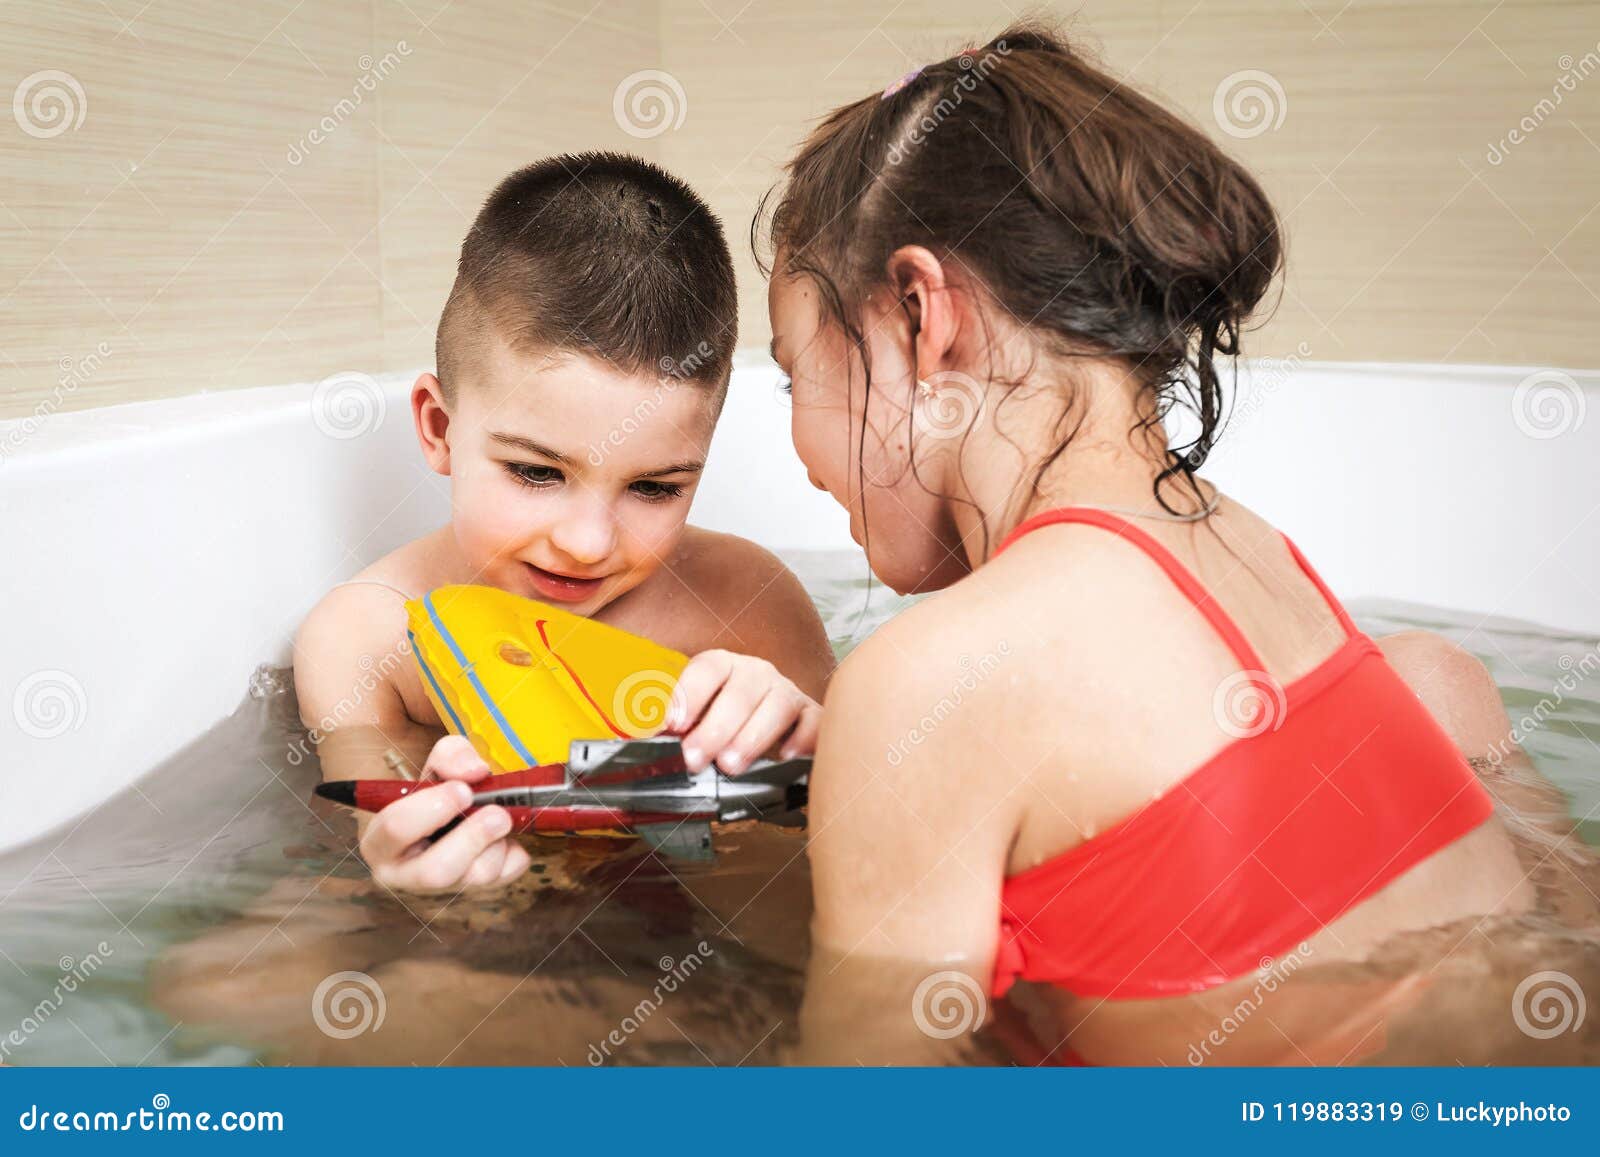 Сестра моет маленькую сестру. Брат и сестра играются в ванне. Маленькие сестрёнки играются в ванной. Совместное купание с сестренкой. Брат и сестра играют в ванной.